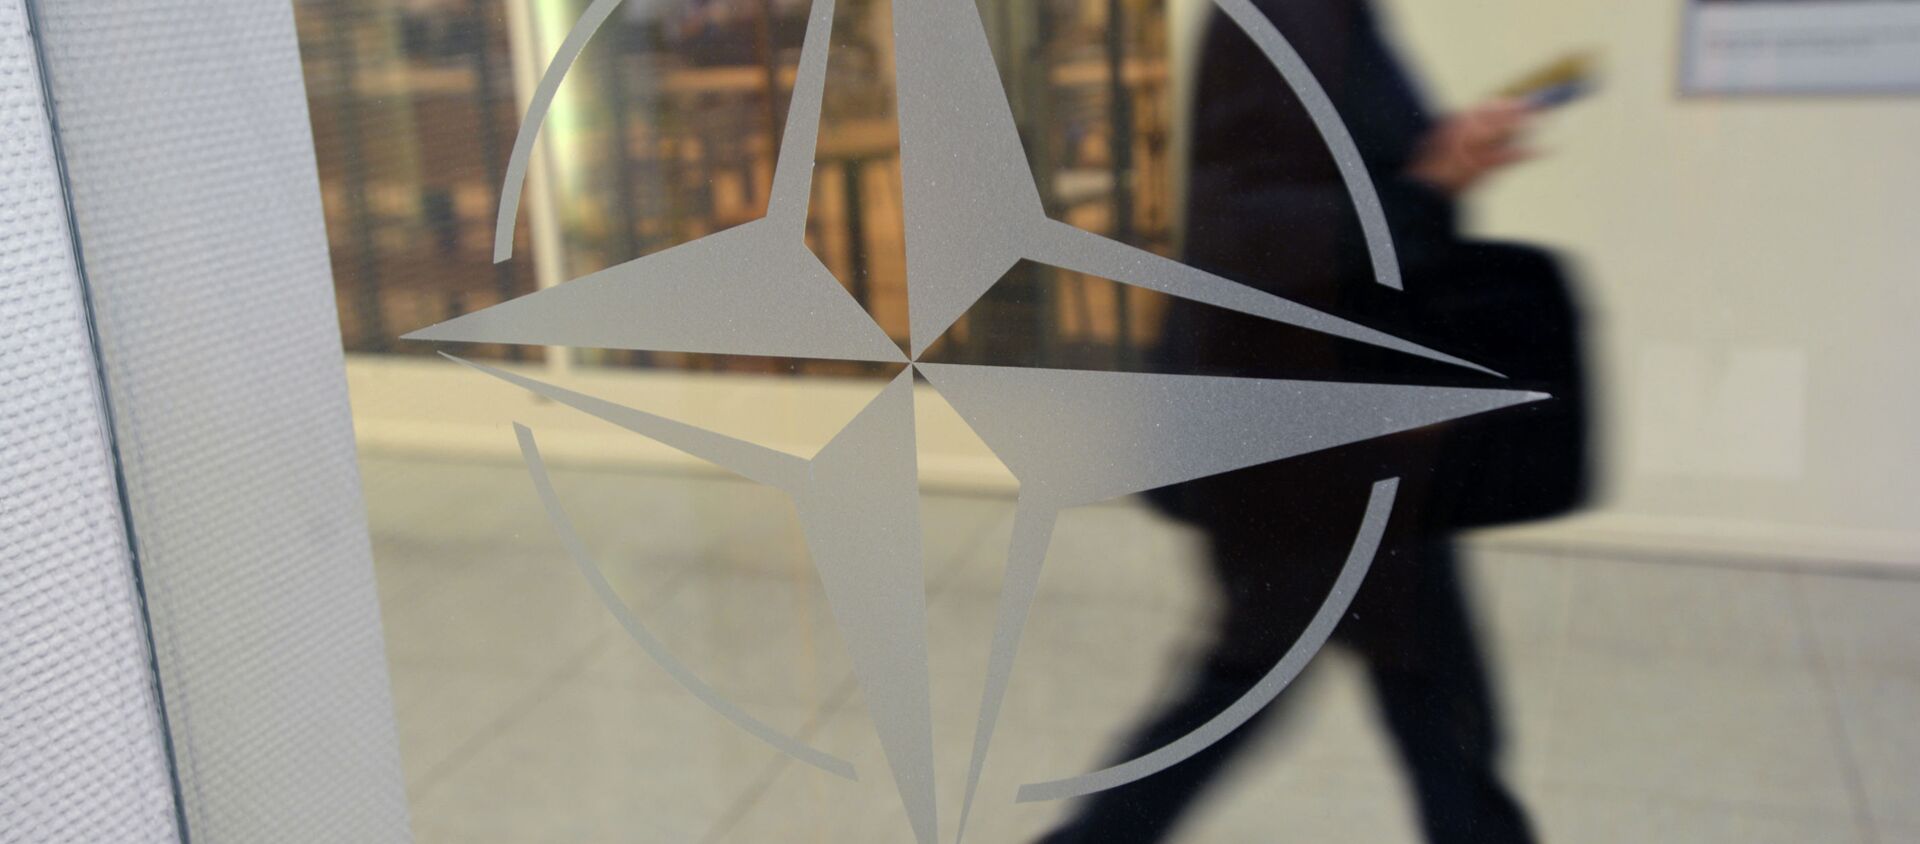 Эмблема организации в штаб-квартире НАТО в Брюсселе. - Sputnik Қазақстан, 1920, 19.11.2021